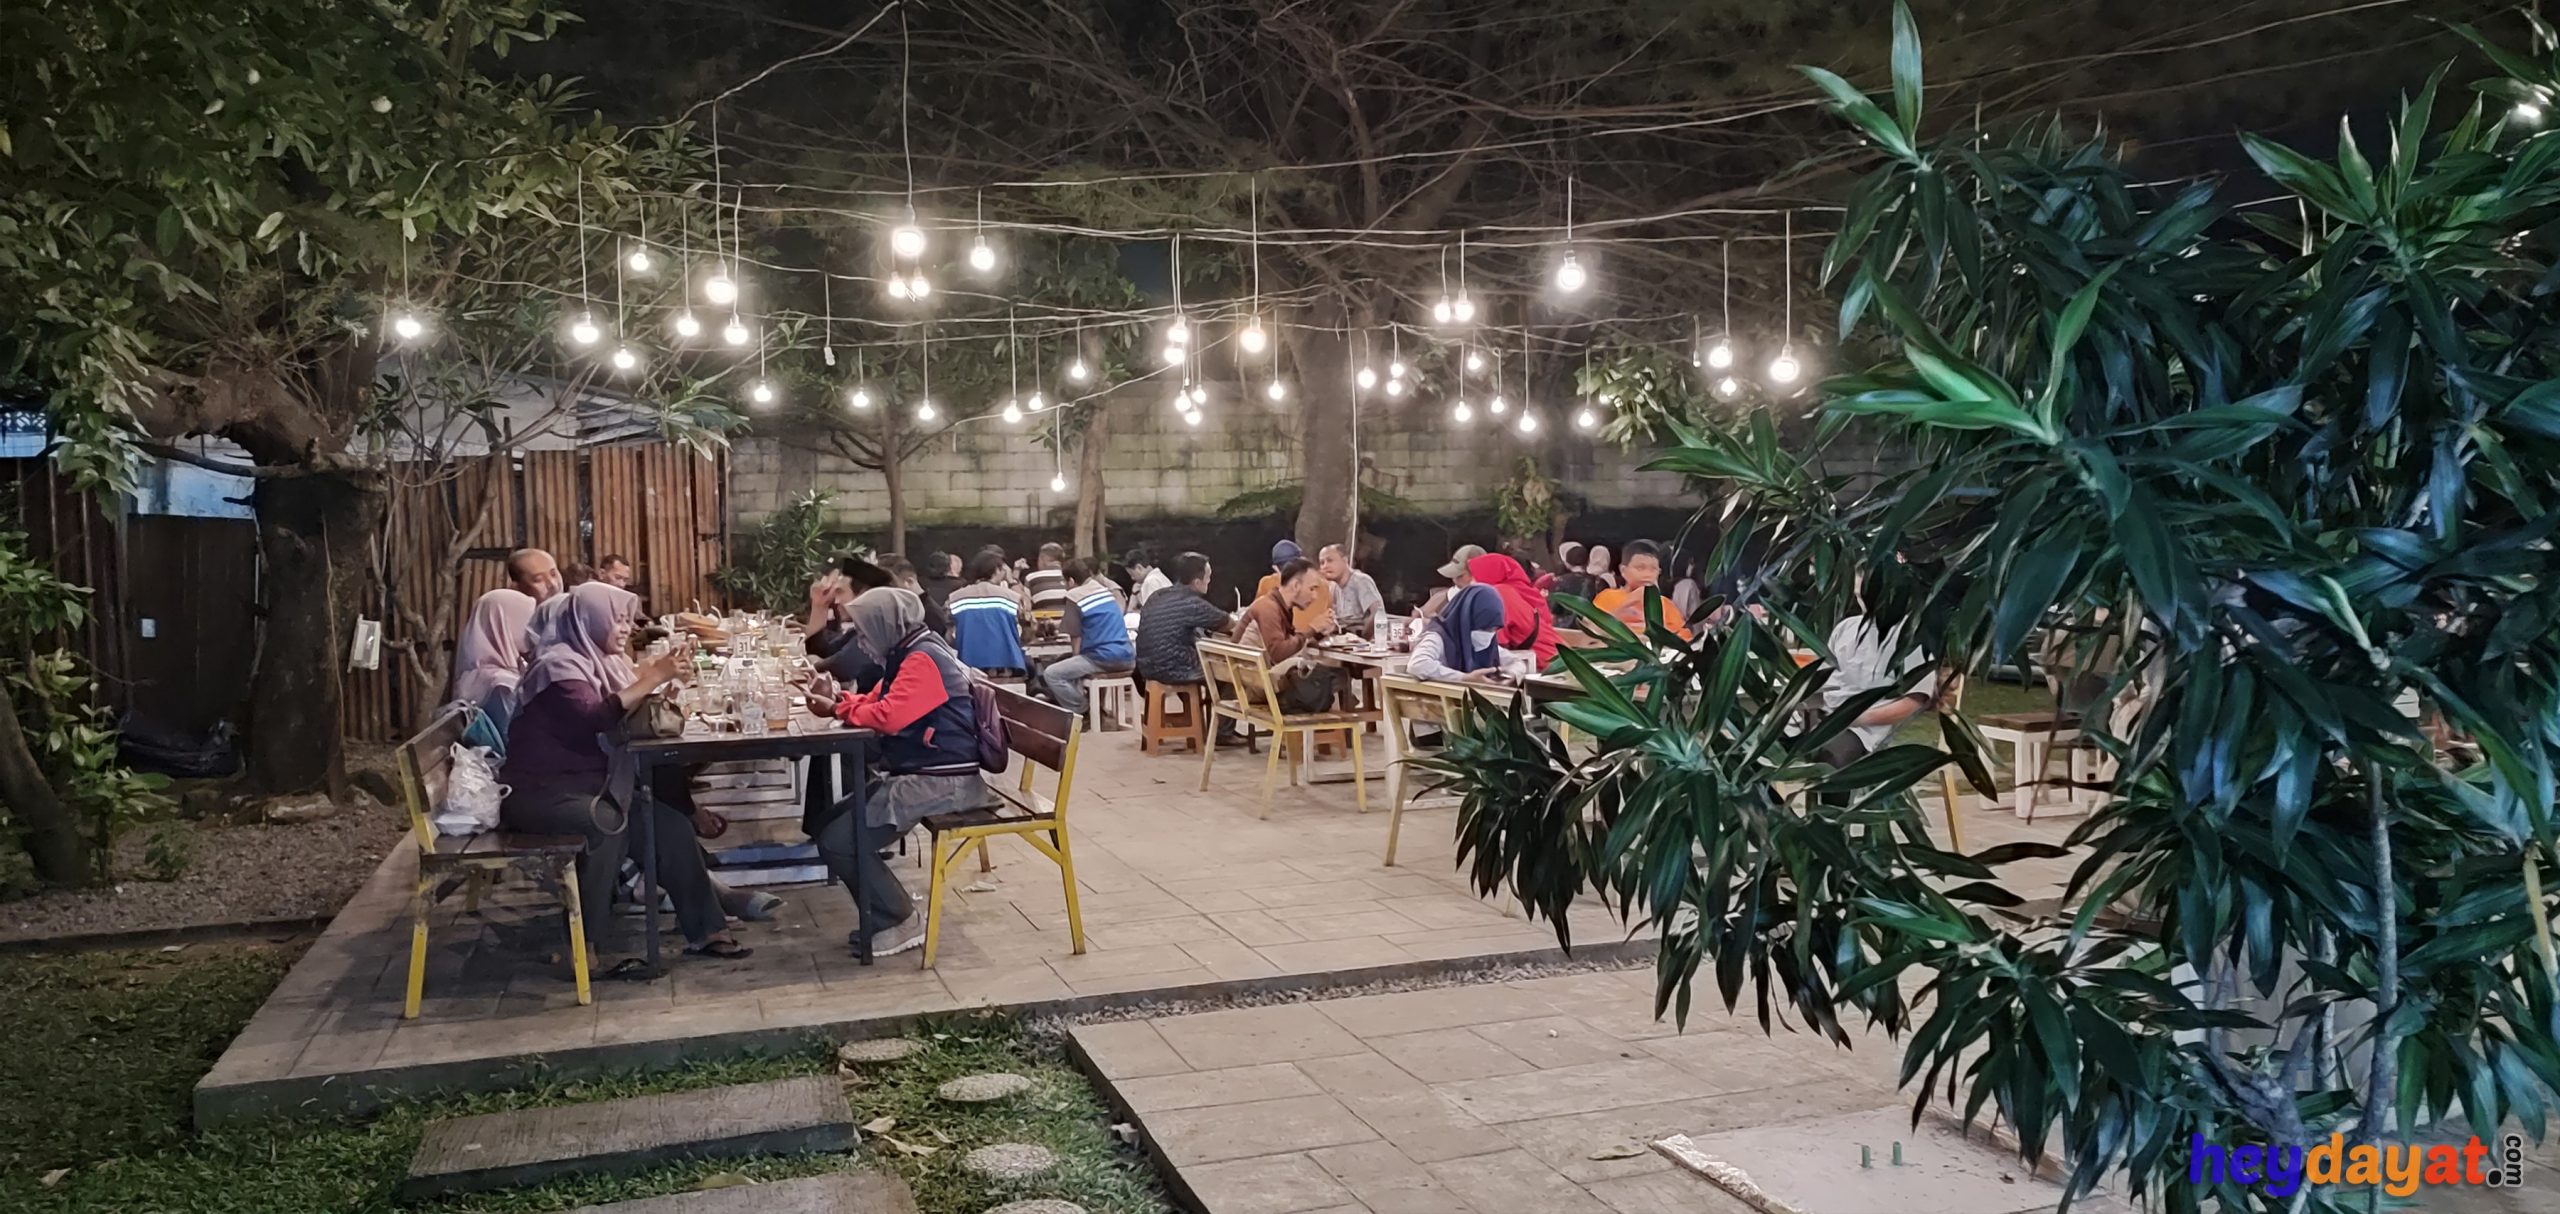 Tempat Makan Enak Murah Nyaman Sodus Surabaya